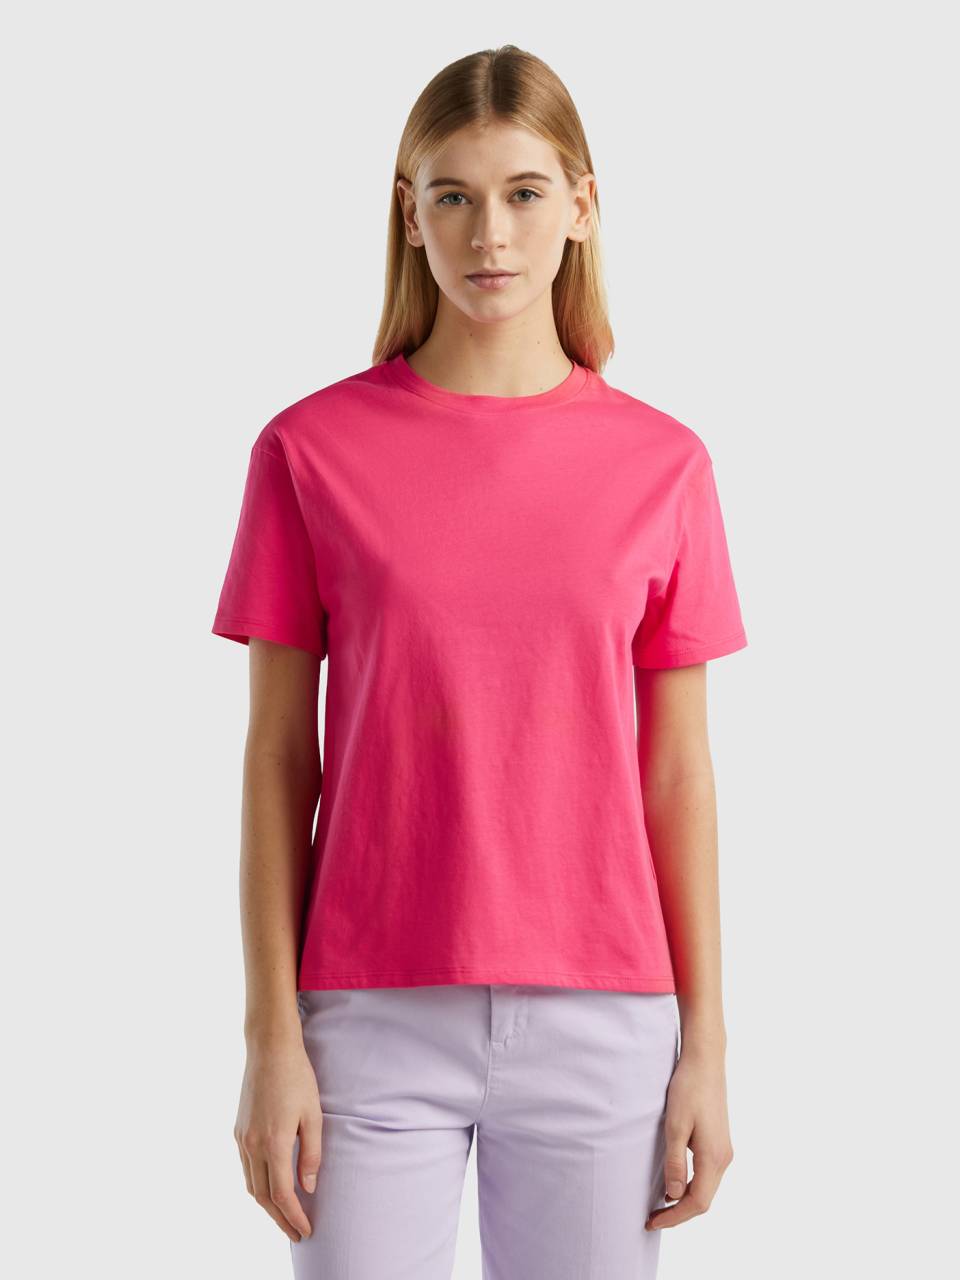 Short sleeve 100% cotton Fuchsia t-shirt - | Benetton